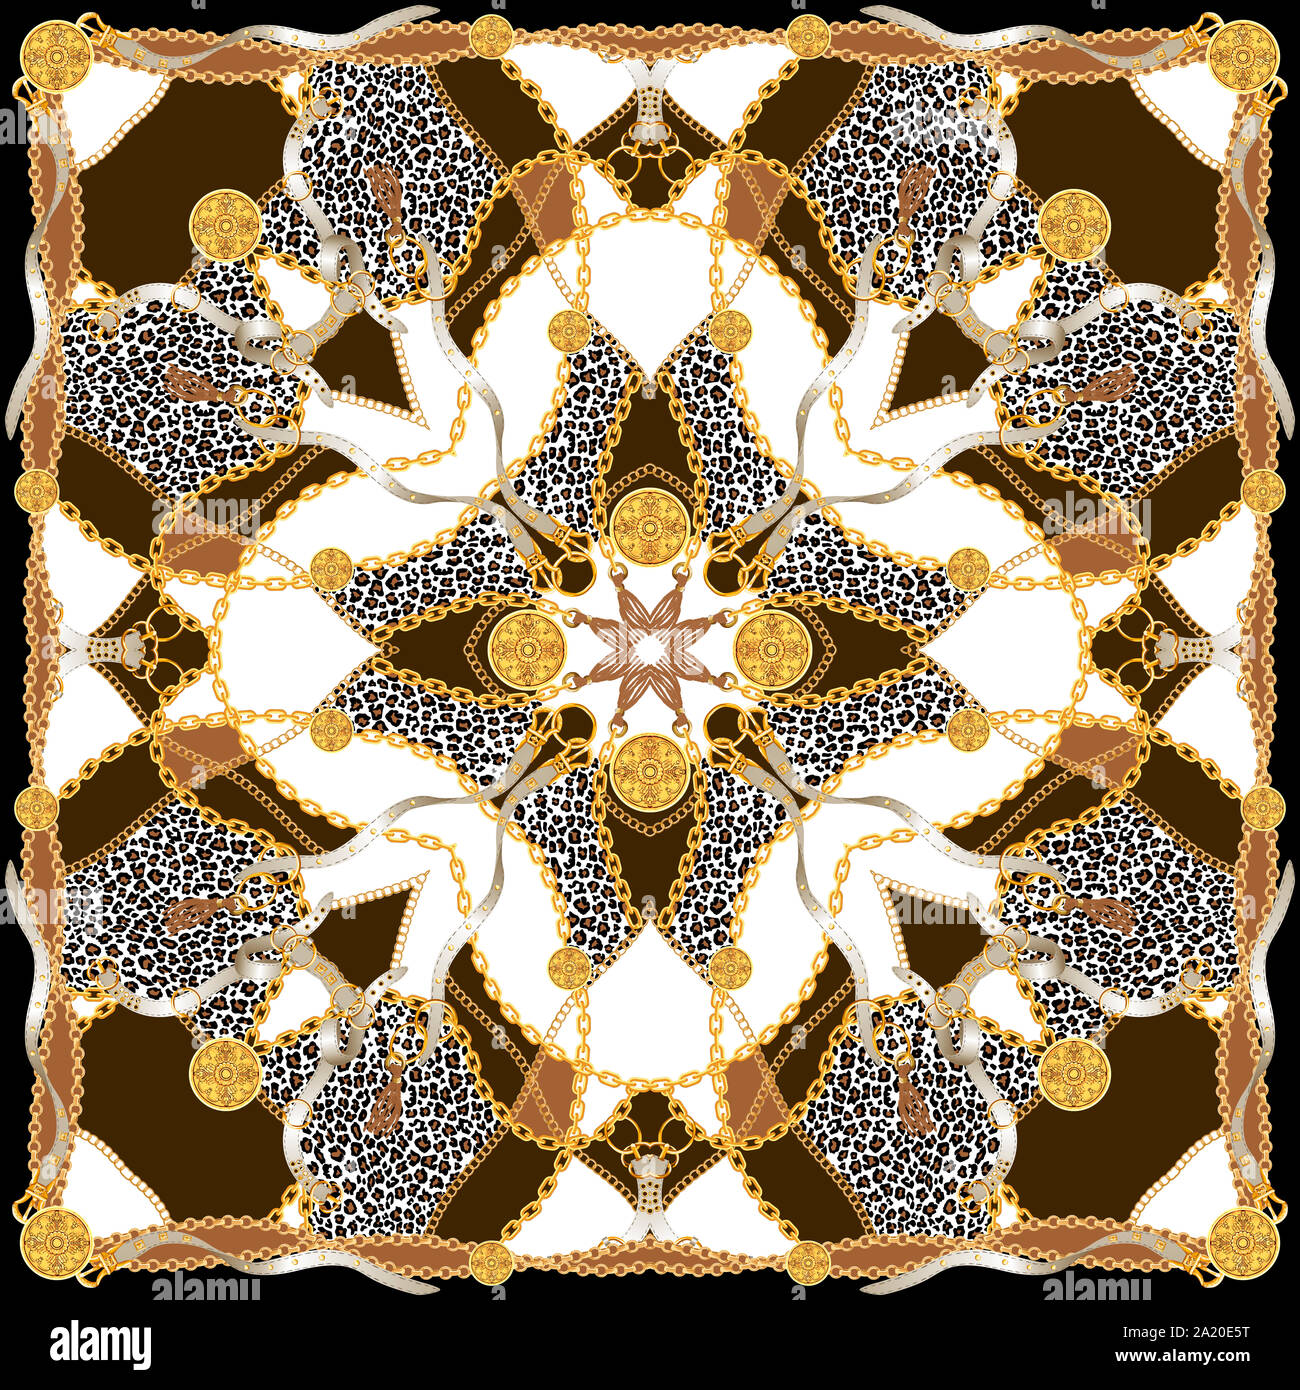 Trendy print mit goldenen Ketten, Riemen und Leopard. Nahtlose Muster mit klassischen Elementen. Damenmode, modernen Schal Sammlung für Textildruck Stockfoto